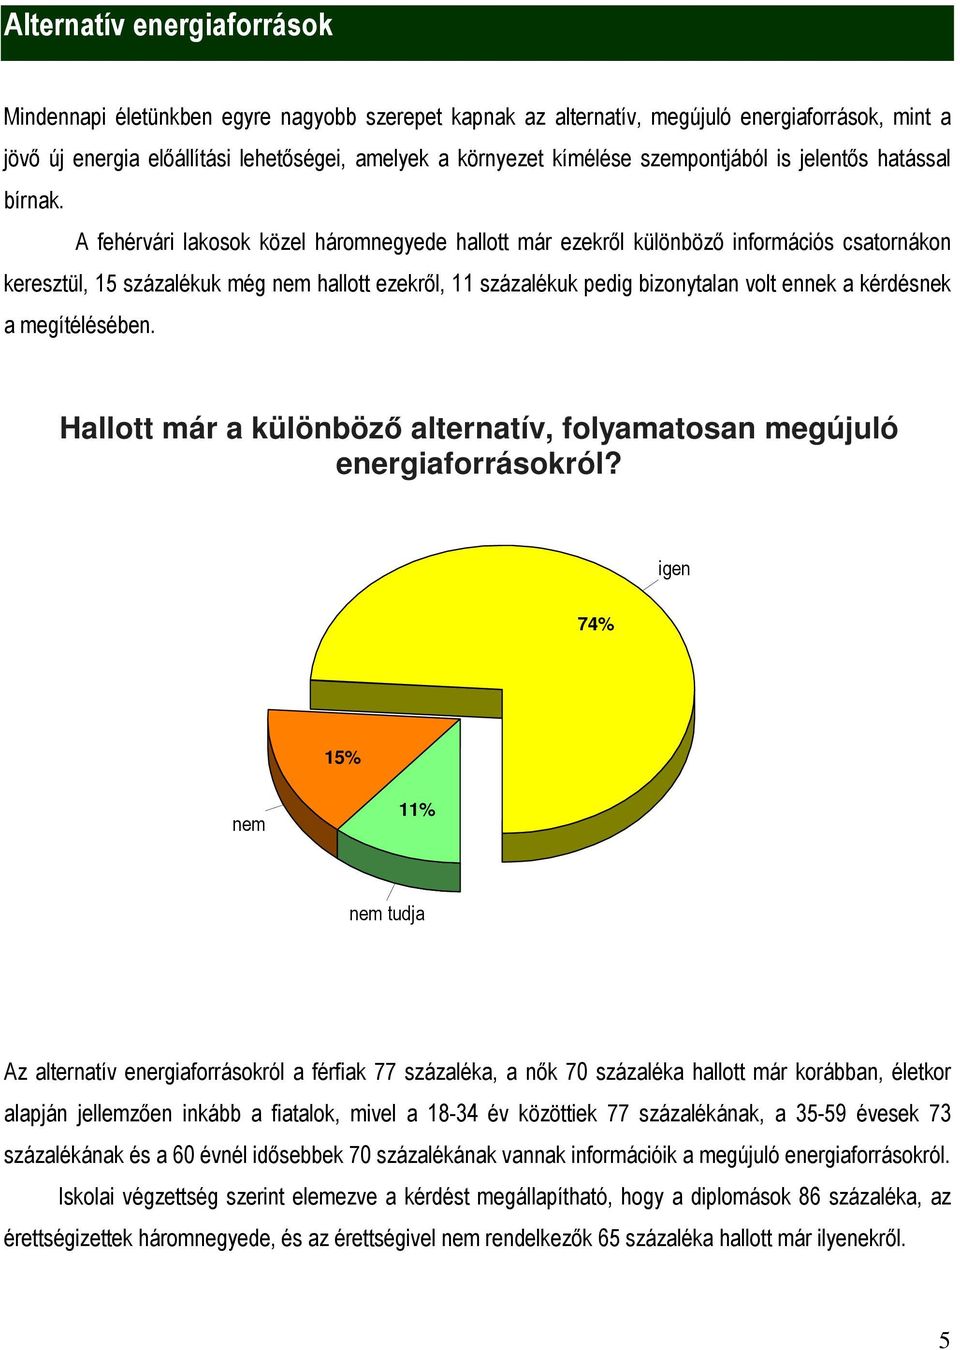 A fehérvári lakosok közel háromnegyede hallott már ezekről különböző információs csatornákon keresztül, 15 százalékuk még nem hallott ezekről, 11 százalékuk pedig bizonytalan volt ennek a kérdésnek a